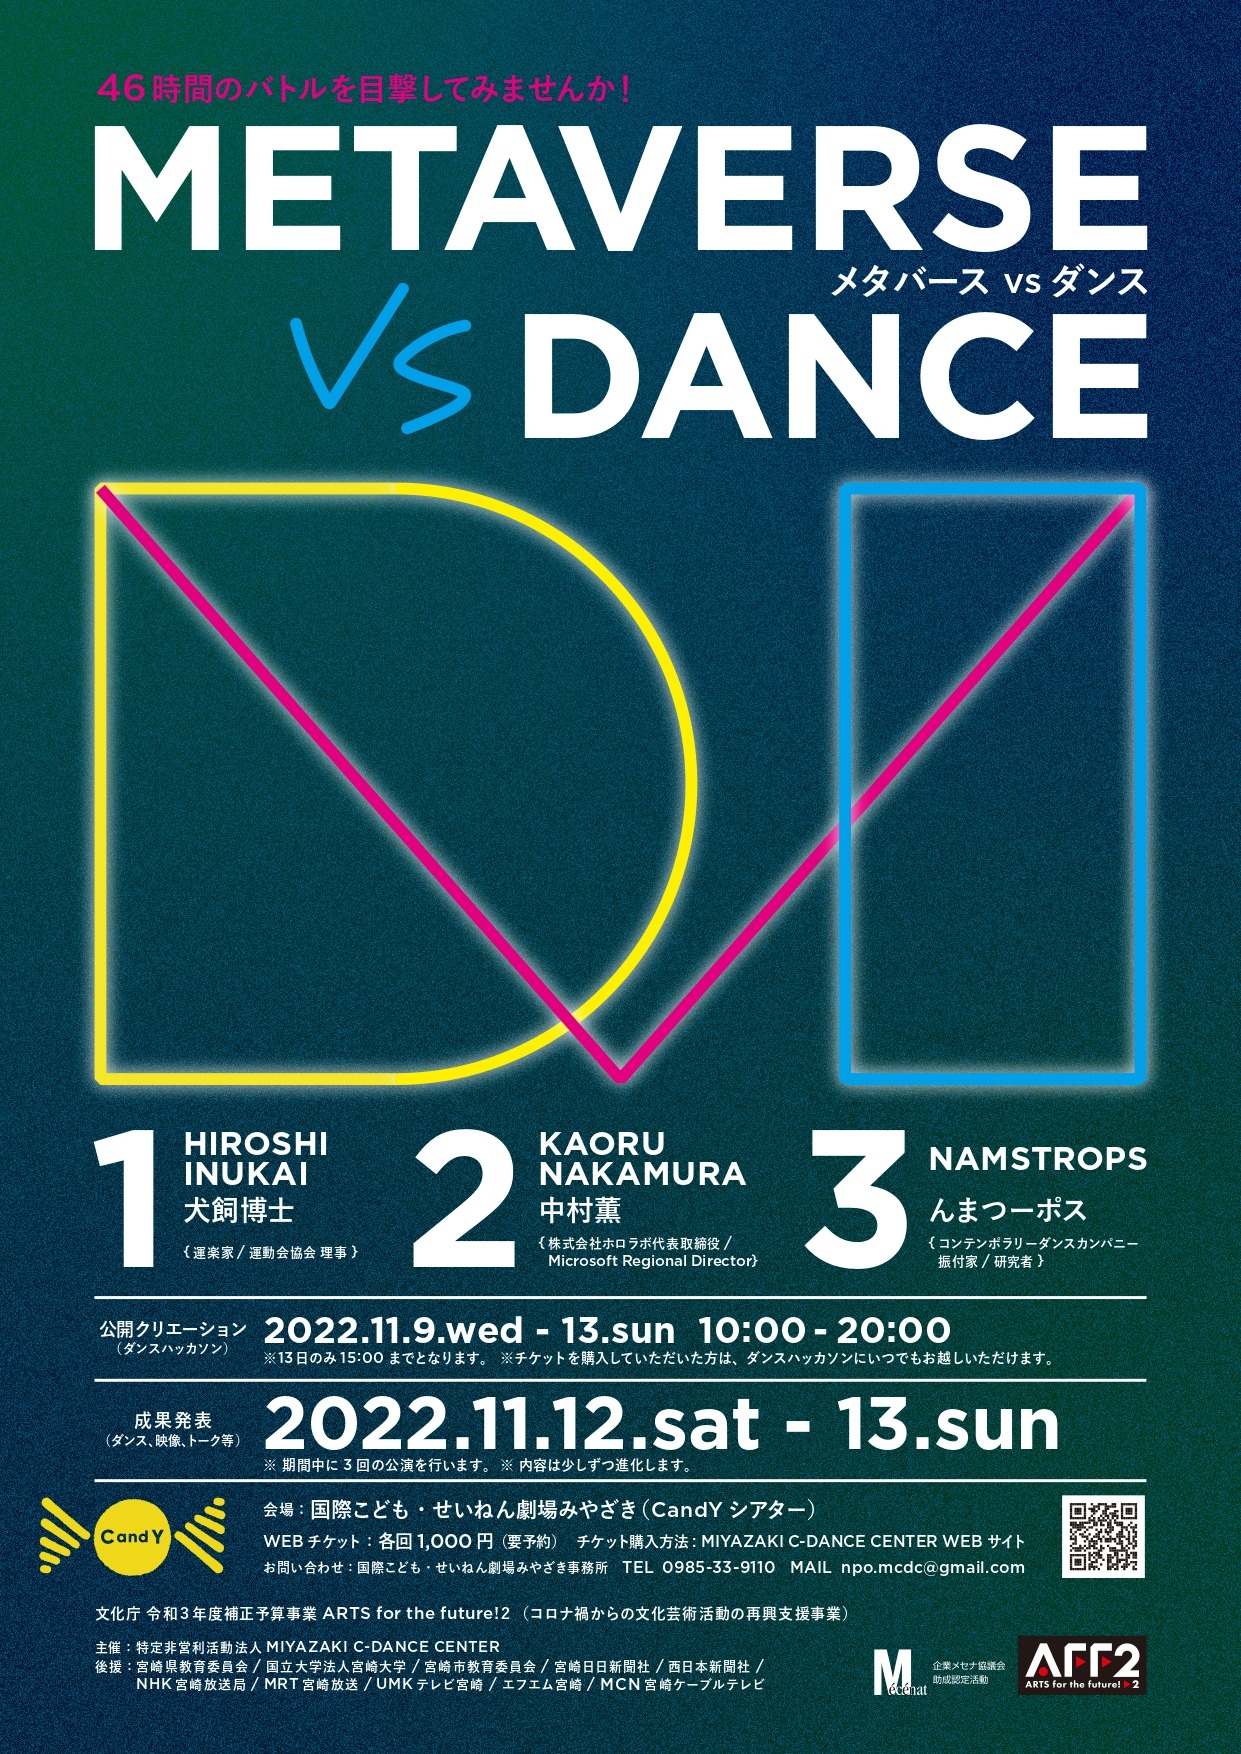 ダンス公演「METAVERSE VS DANCE」時間変更のお知らせ